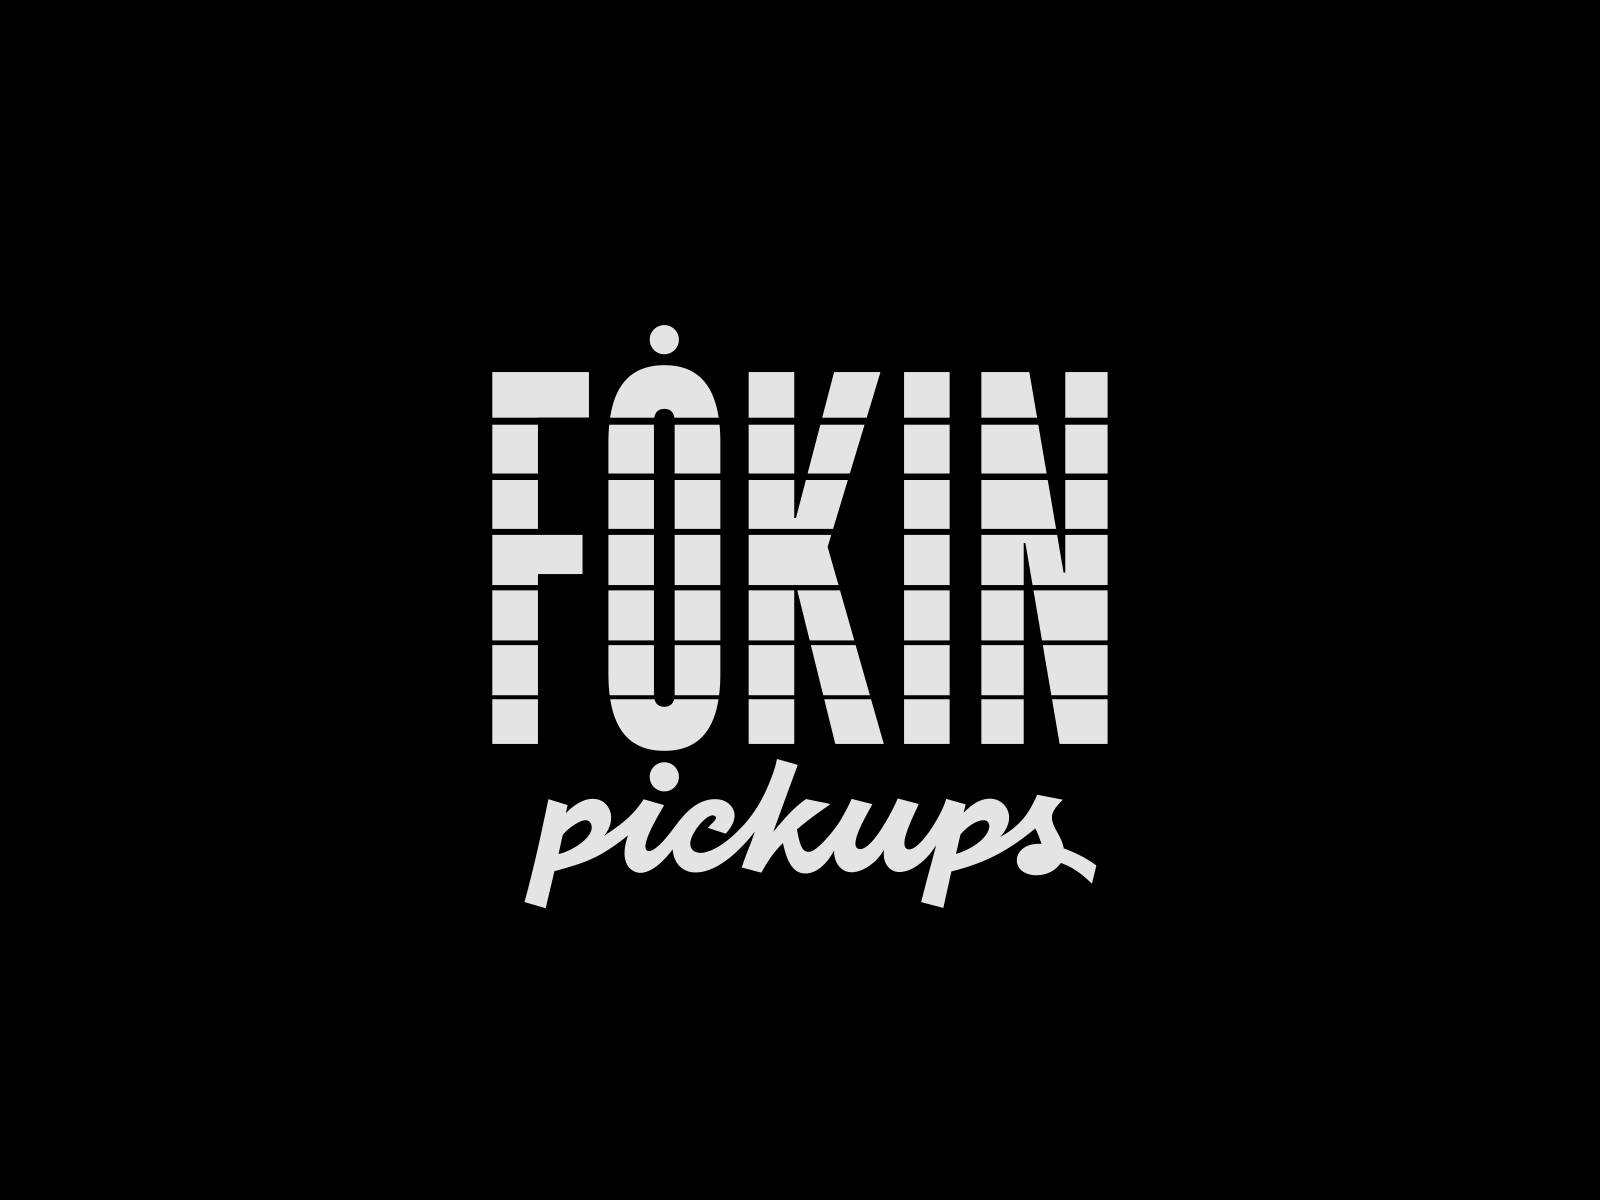 Fokin Pickups design electric guitar lettering logo type